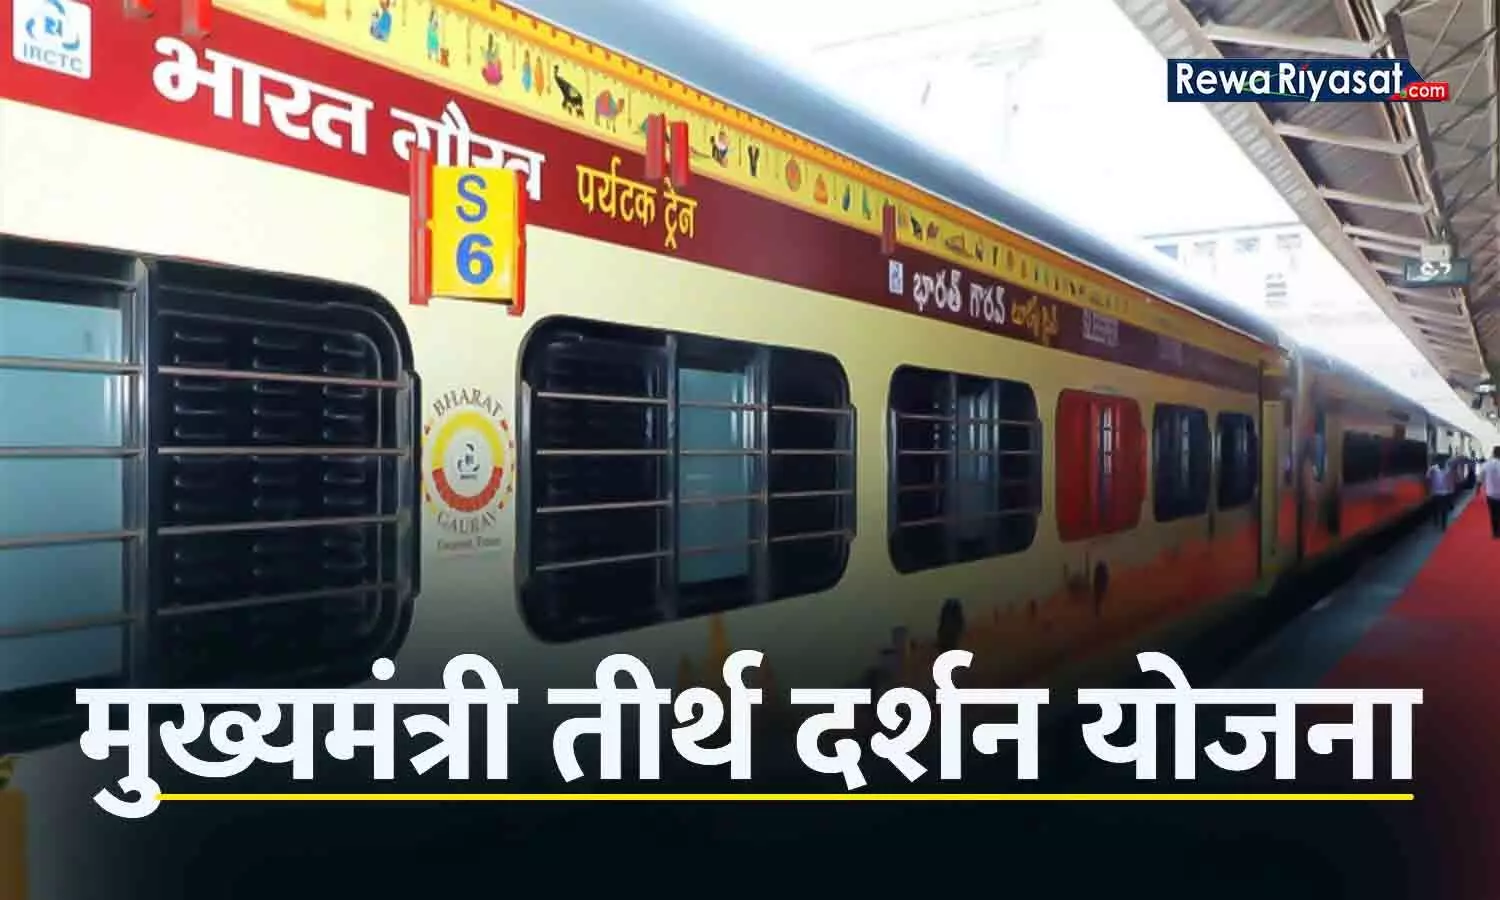 मुख्यमंत्री तीर्थदर्शन योजना: कल रीवा से जगन्नाथपुरी के लिए रवाना होगी तीर्थदर्शन ट्रेन, वरिष्ठ नागरिकों को तीर्थ की यात्रा नि:शुल्क